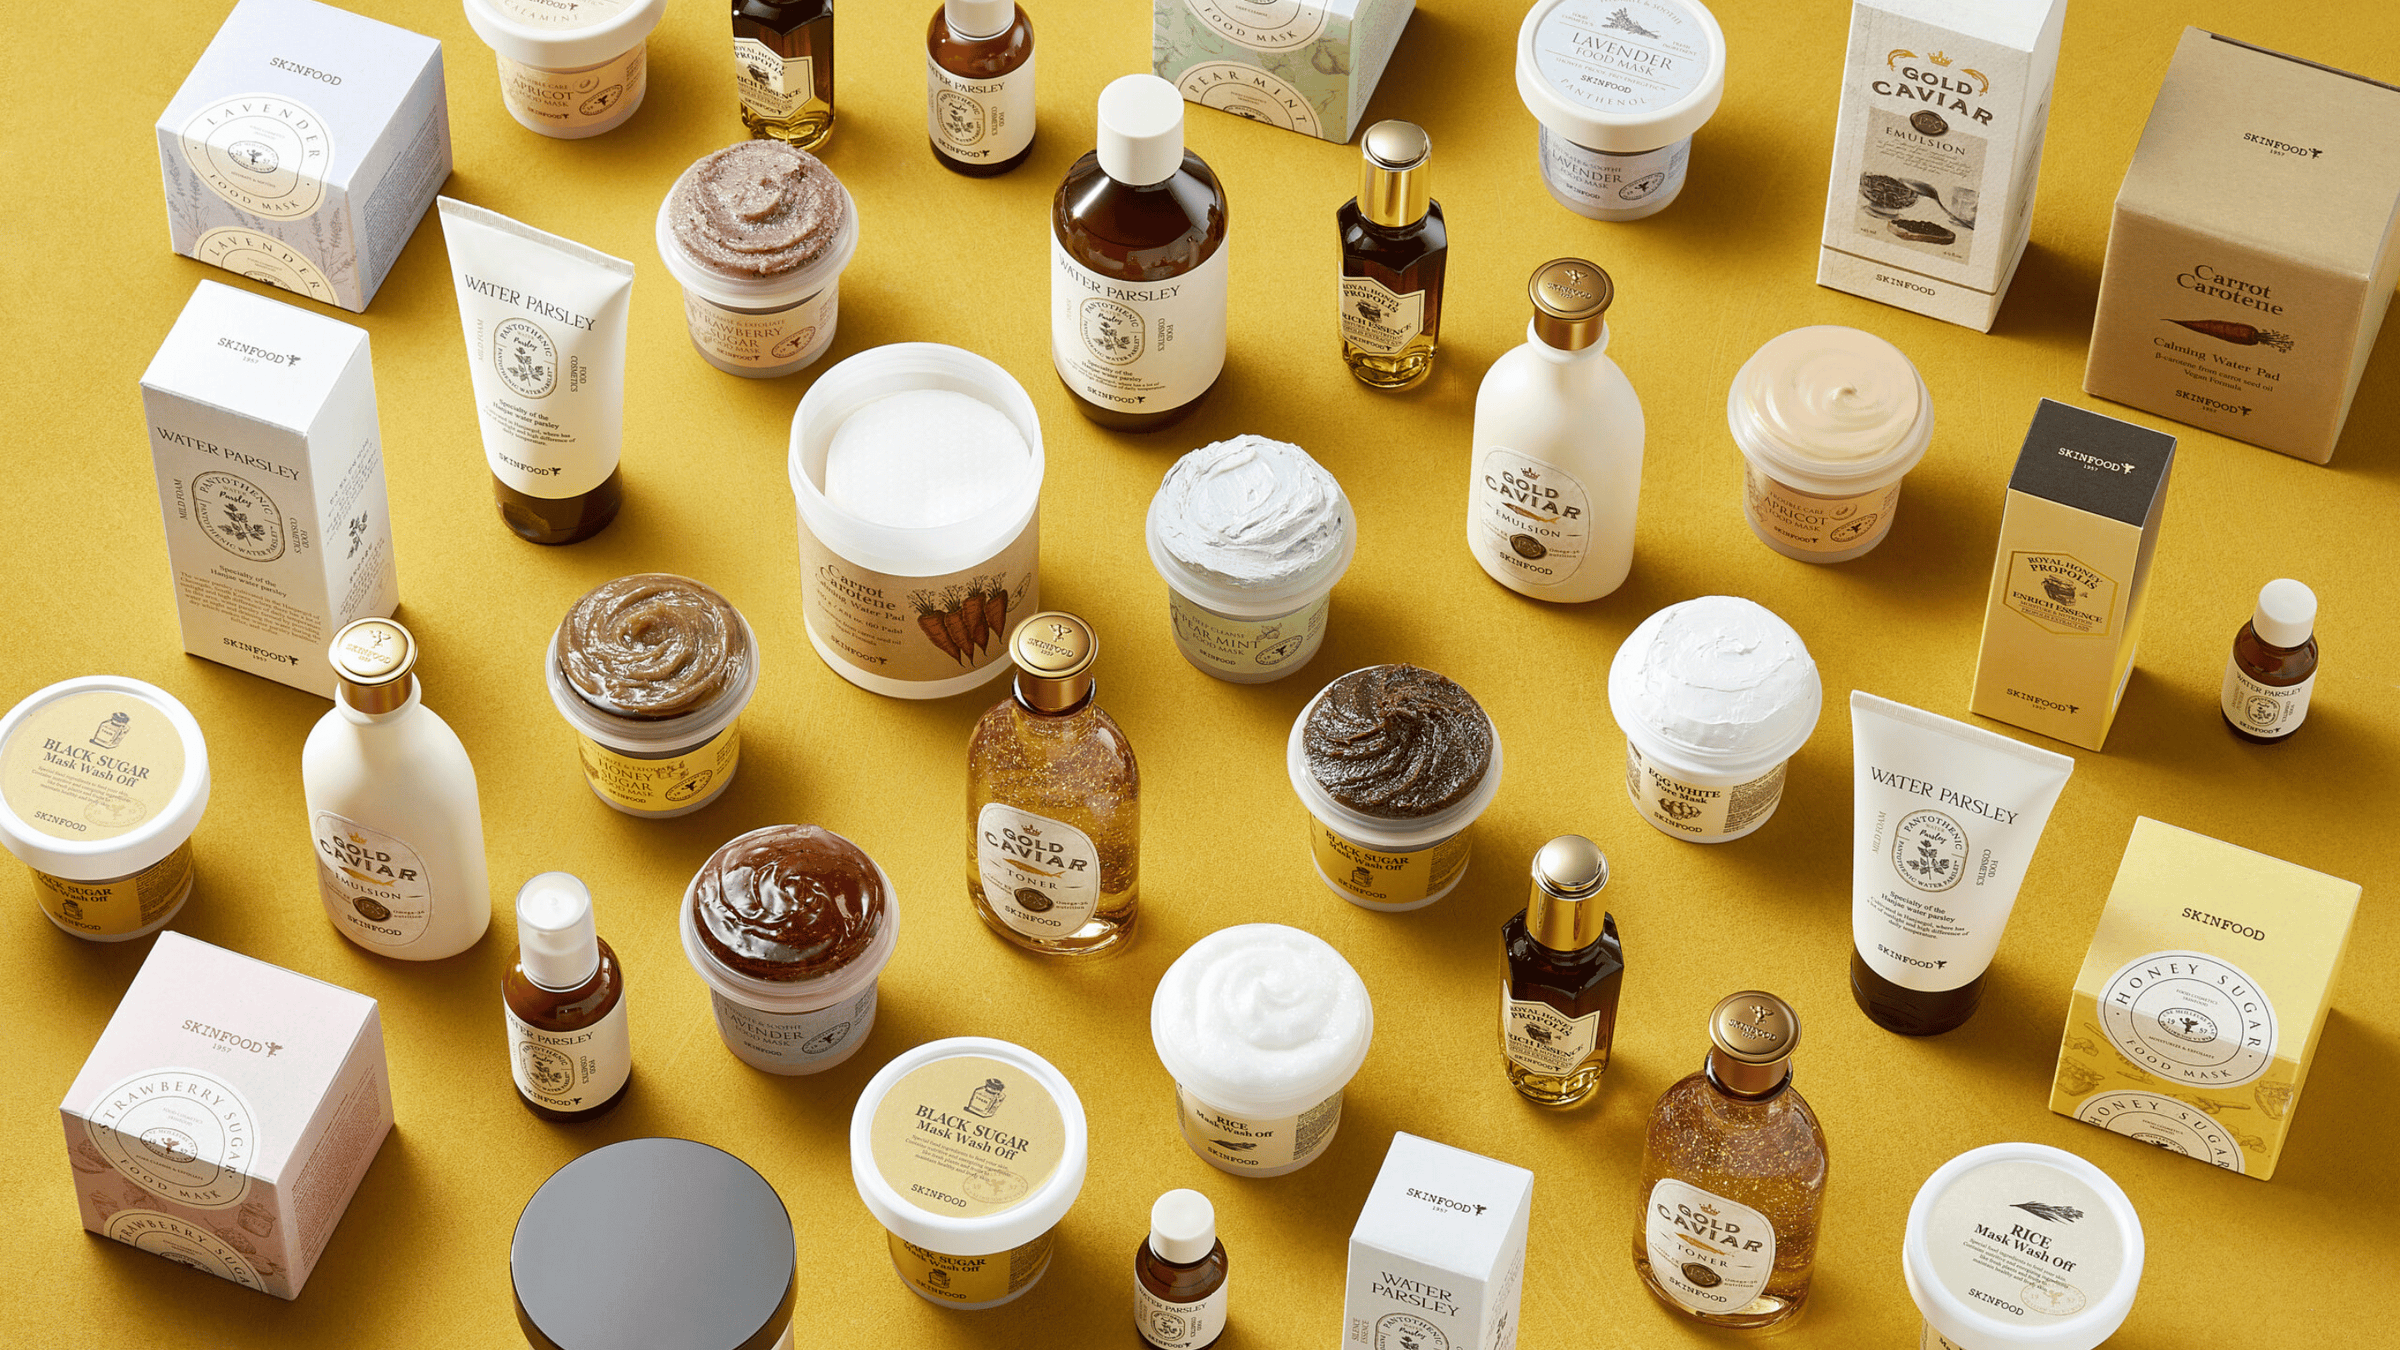 En samling av kosmetiska produkter från SKINFOOD på en gul bakgrund.